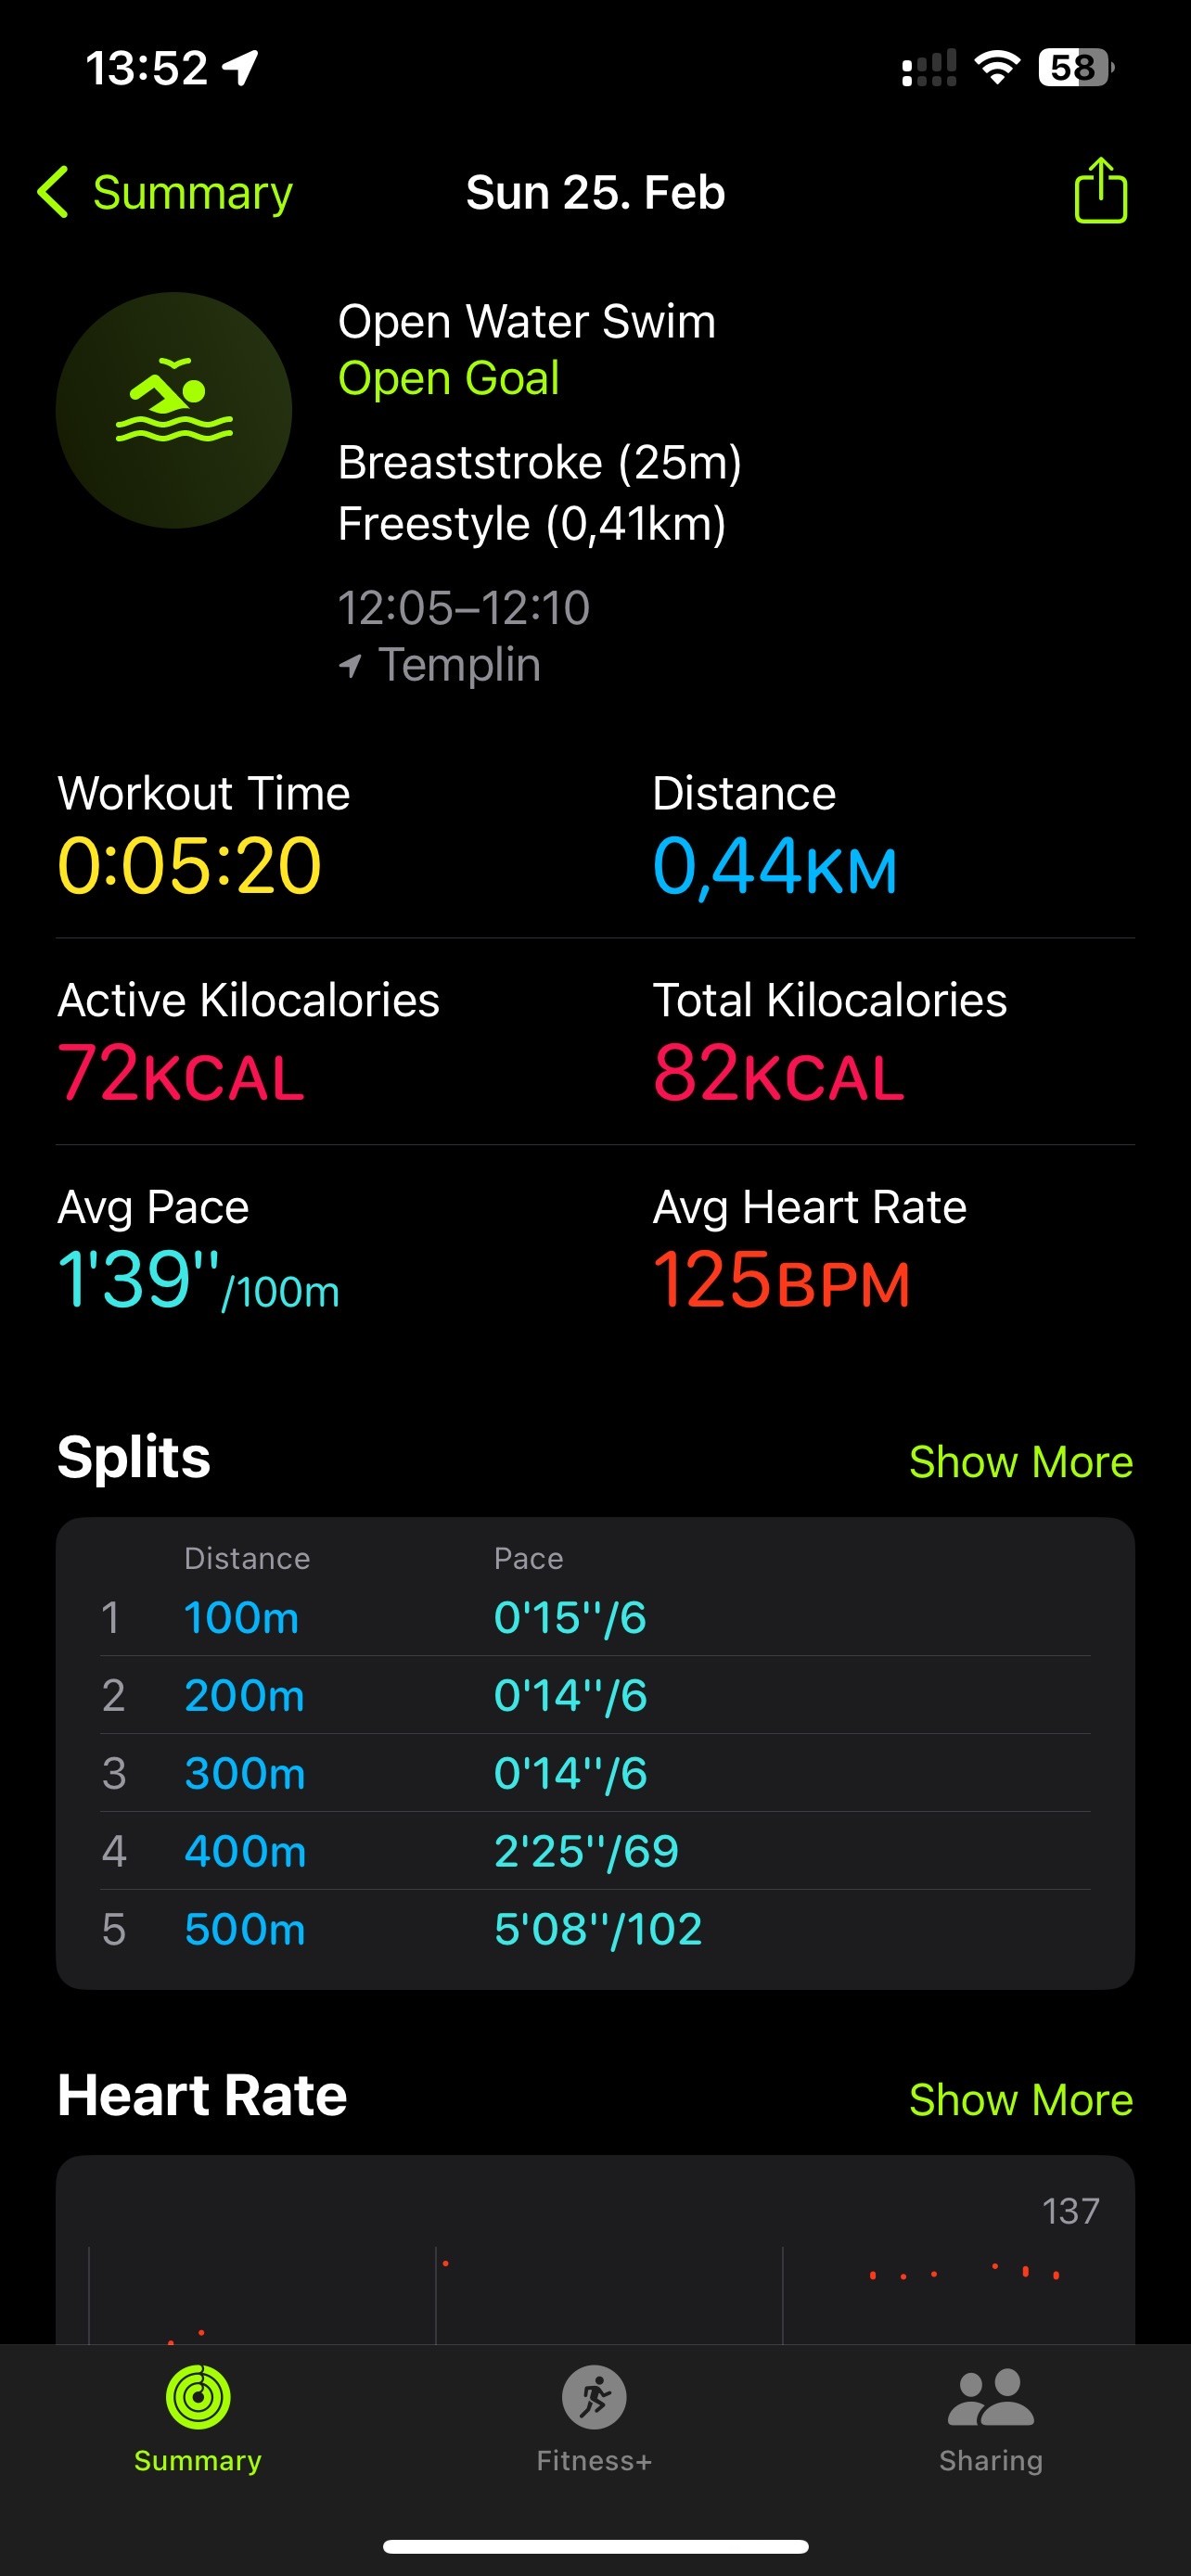 Der Screenshot der Fitness-App zeigt die Zusammenfassung einer Freiwasser-Schwimmeinheit mit Details wie Trainingszeit, Distanz, Kalorienverbrauch, Durchschnittsgeschwindigkeit, Herzfrequenz und Splits für verschiedene Distanzen.